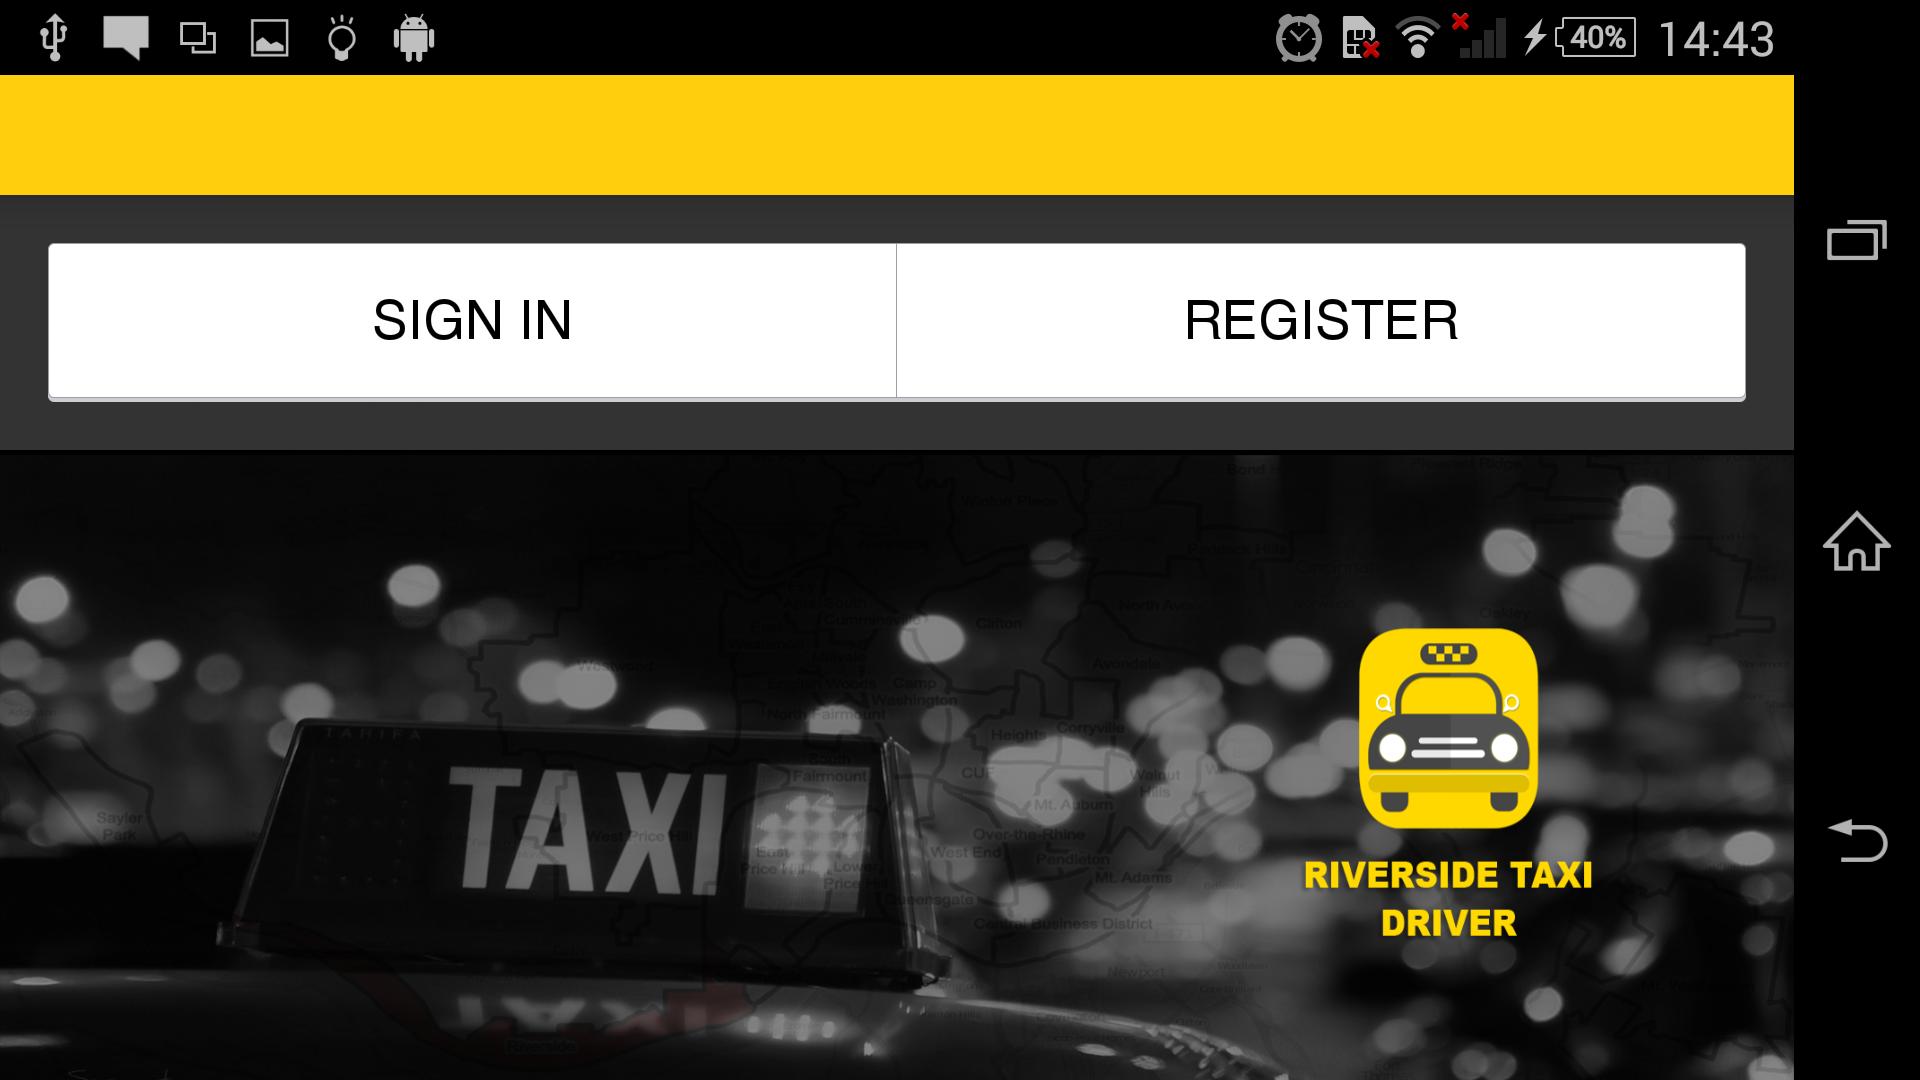 Такси драйвер авторизация. Такси драйвер rfhnf. Приложение такси драйвер. Такси драйвер в каком городе находится.